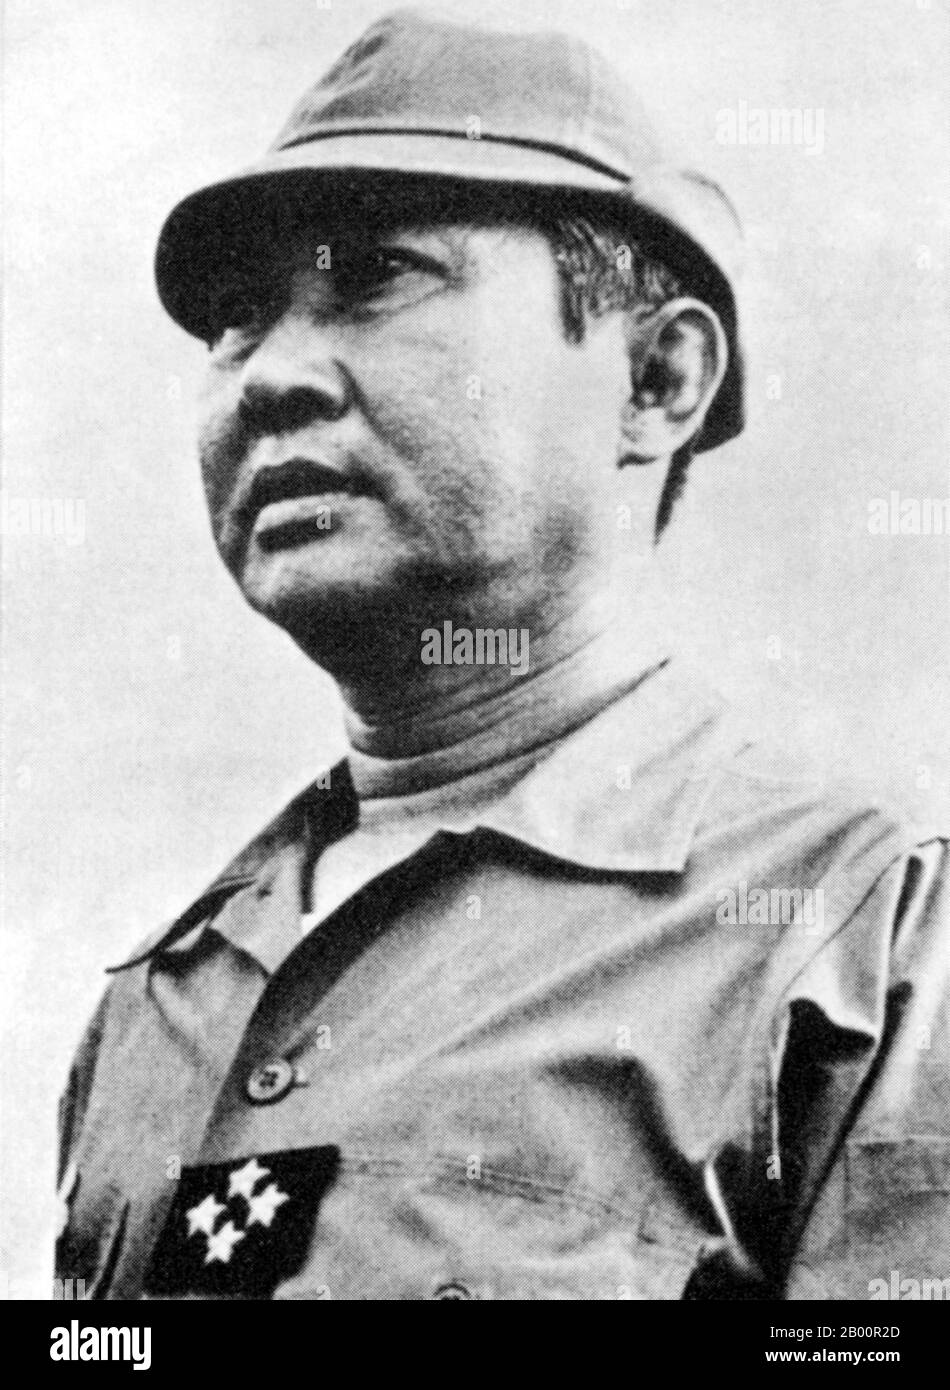 Kambodscha: General Lon Nol führte einen Militärputsch gegen Prinz Norodom Sihanouk und wurde Präsident der Khmer Republik (1970-1975). LON Nol ( ​November 13, 1913 – 17. November 1985) war ein kambodschanischer Politiker und Soldat, der zweimal als Premierminister Kambodschas diente und immer wieder als Verteidigungsminister diente. Er führte einen Militärputsch gegen Prinz Norodom Sihanouk und wurde Präsident der Khmer Republik. LON Nol floh im April 1975 aus Kambodscha und siedelte sich zunächst in Hawaii und dann in Fullerton, Kalifornien, an. Er starb am 17. November 1985. Stockfoto